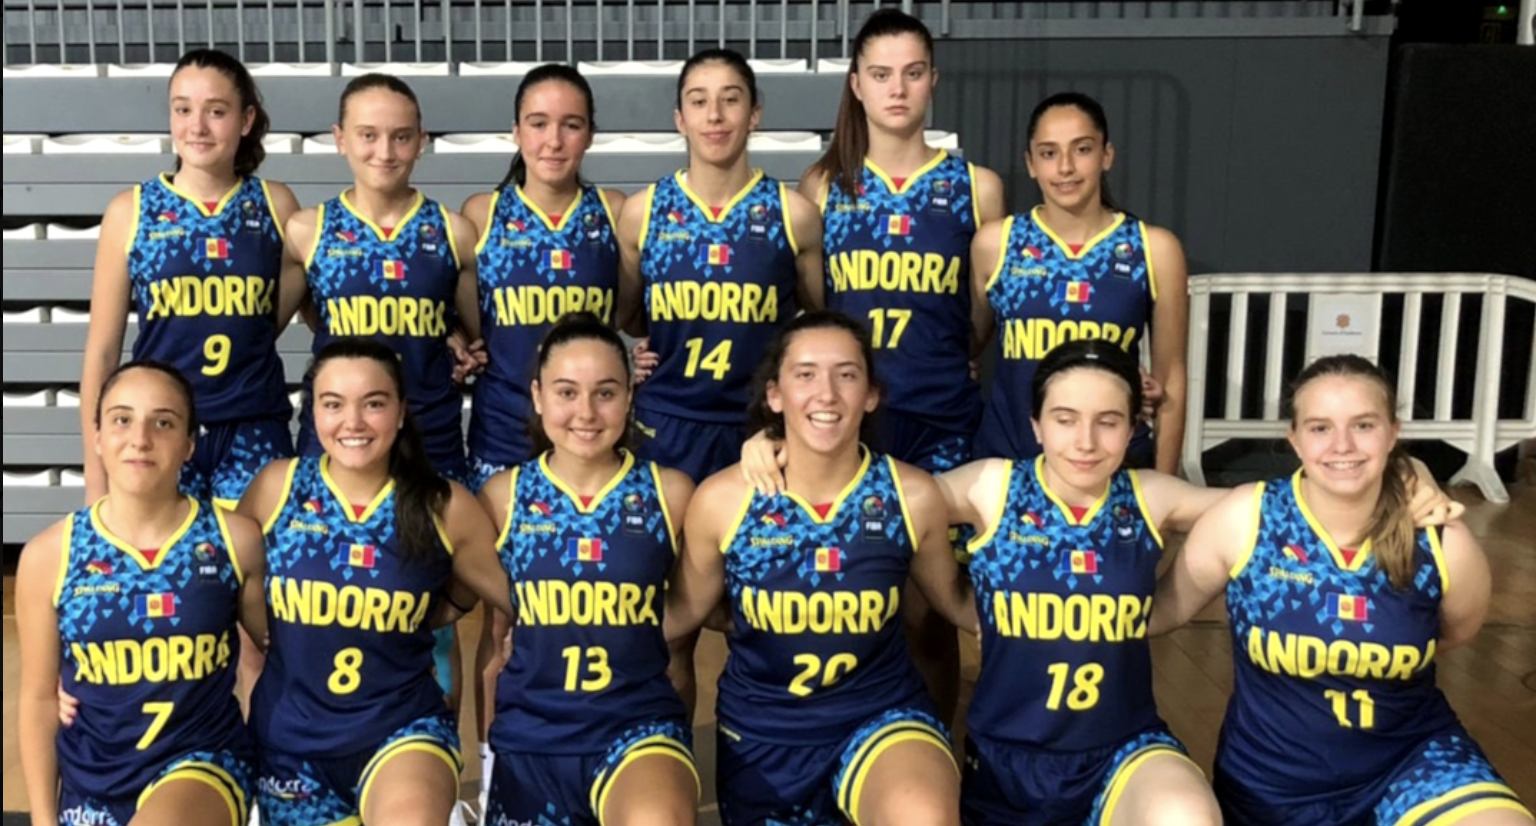 La selecció sots-16 femenina d'Andorra